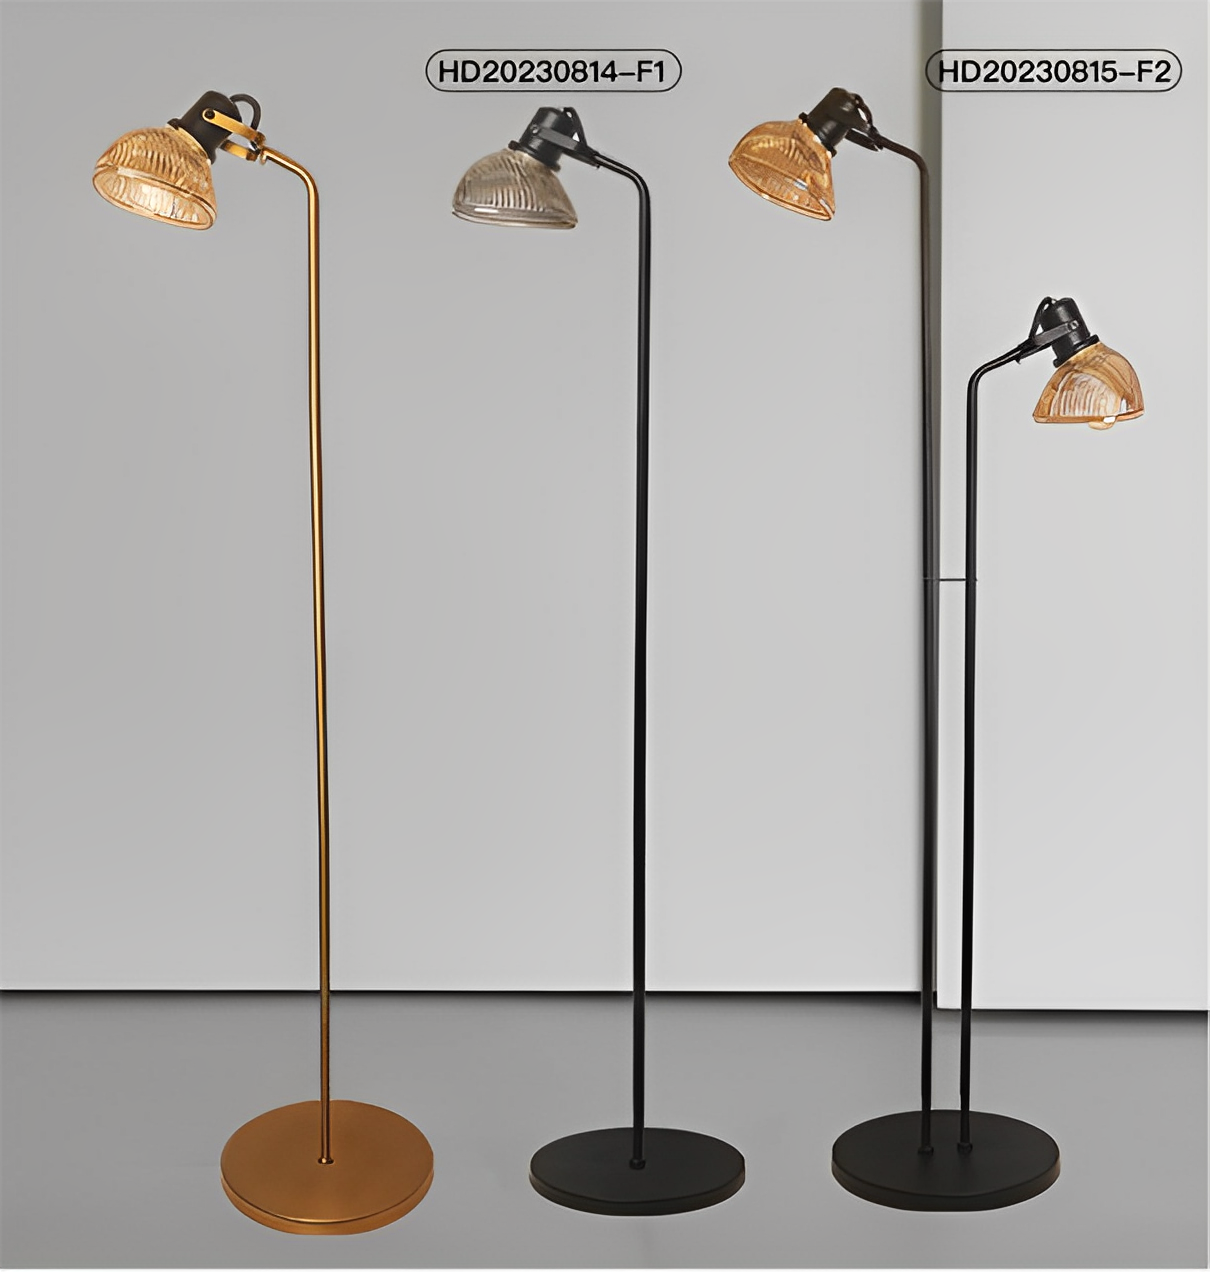  Customize indoor Standing LED Floor Lamp 